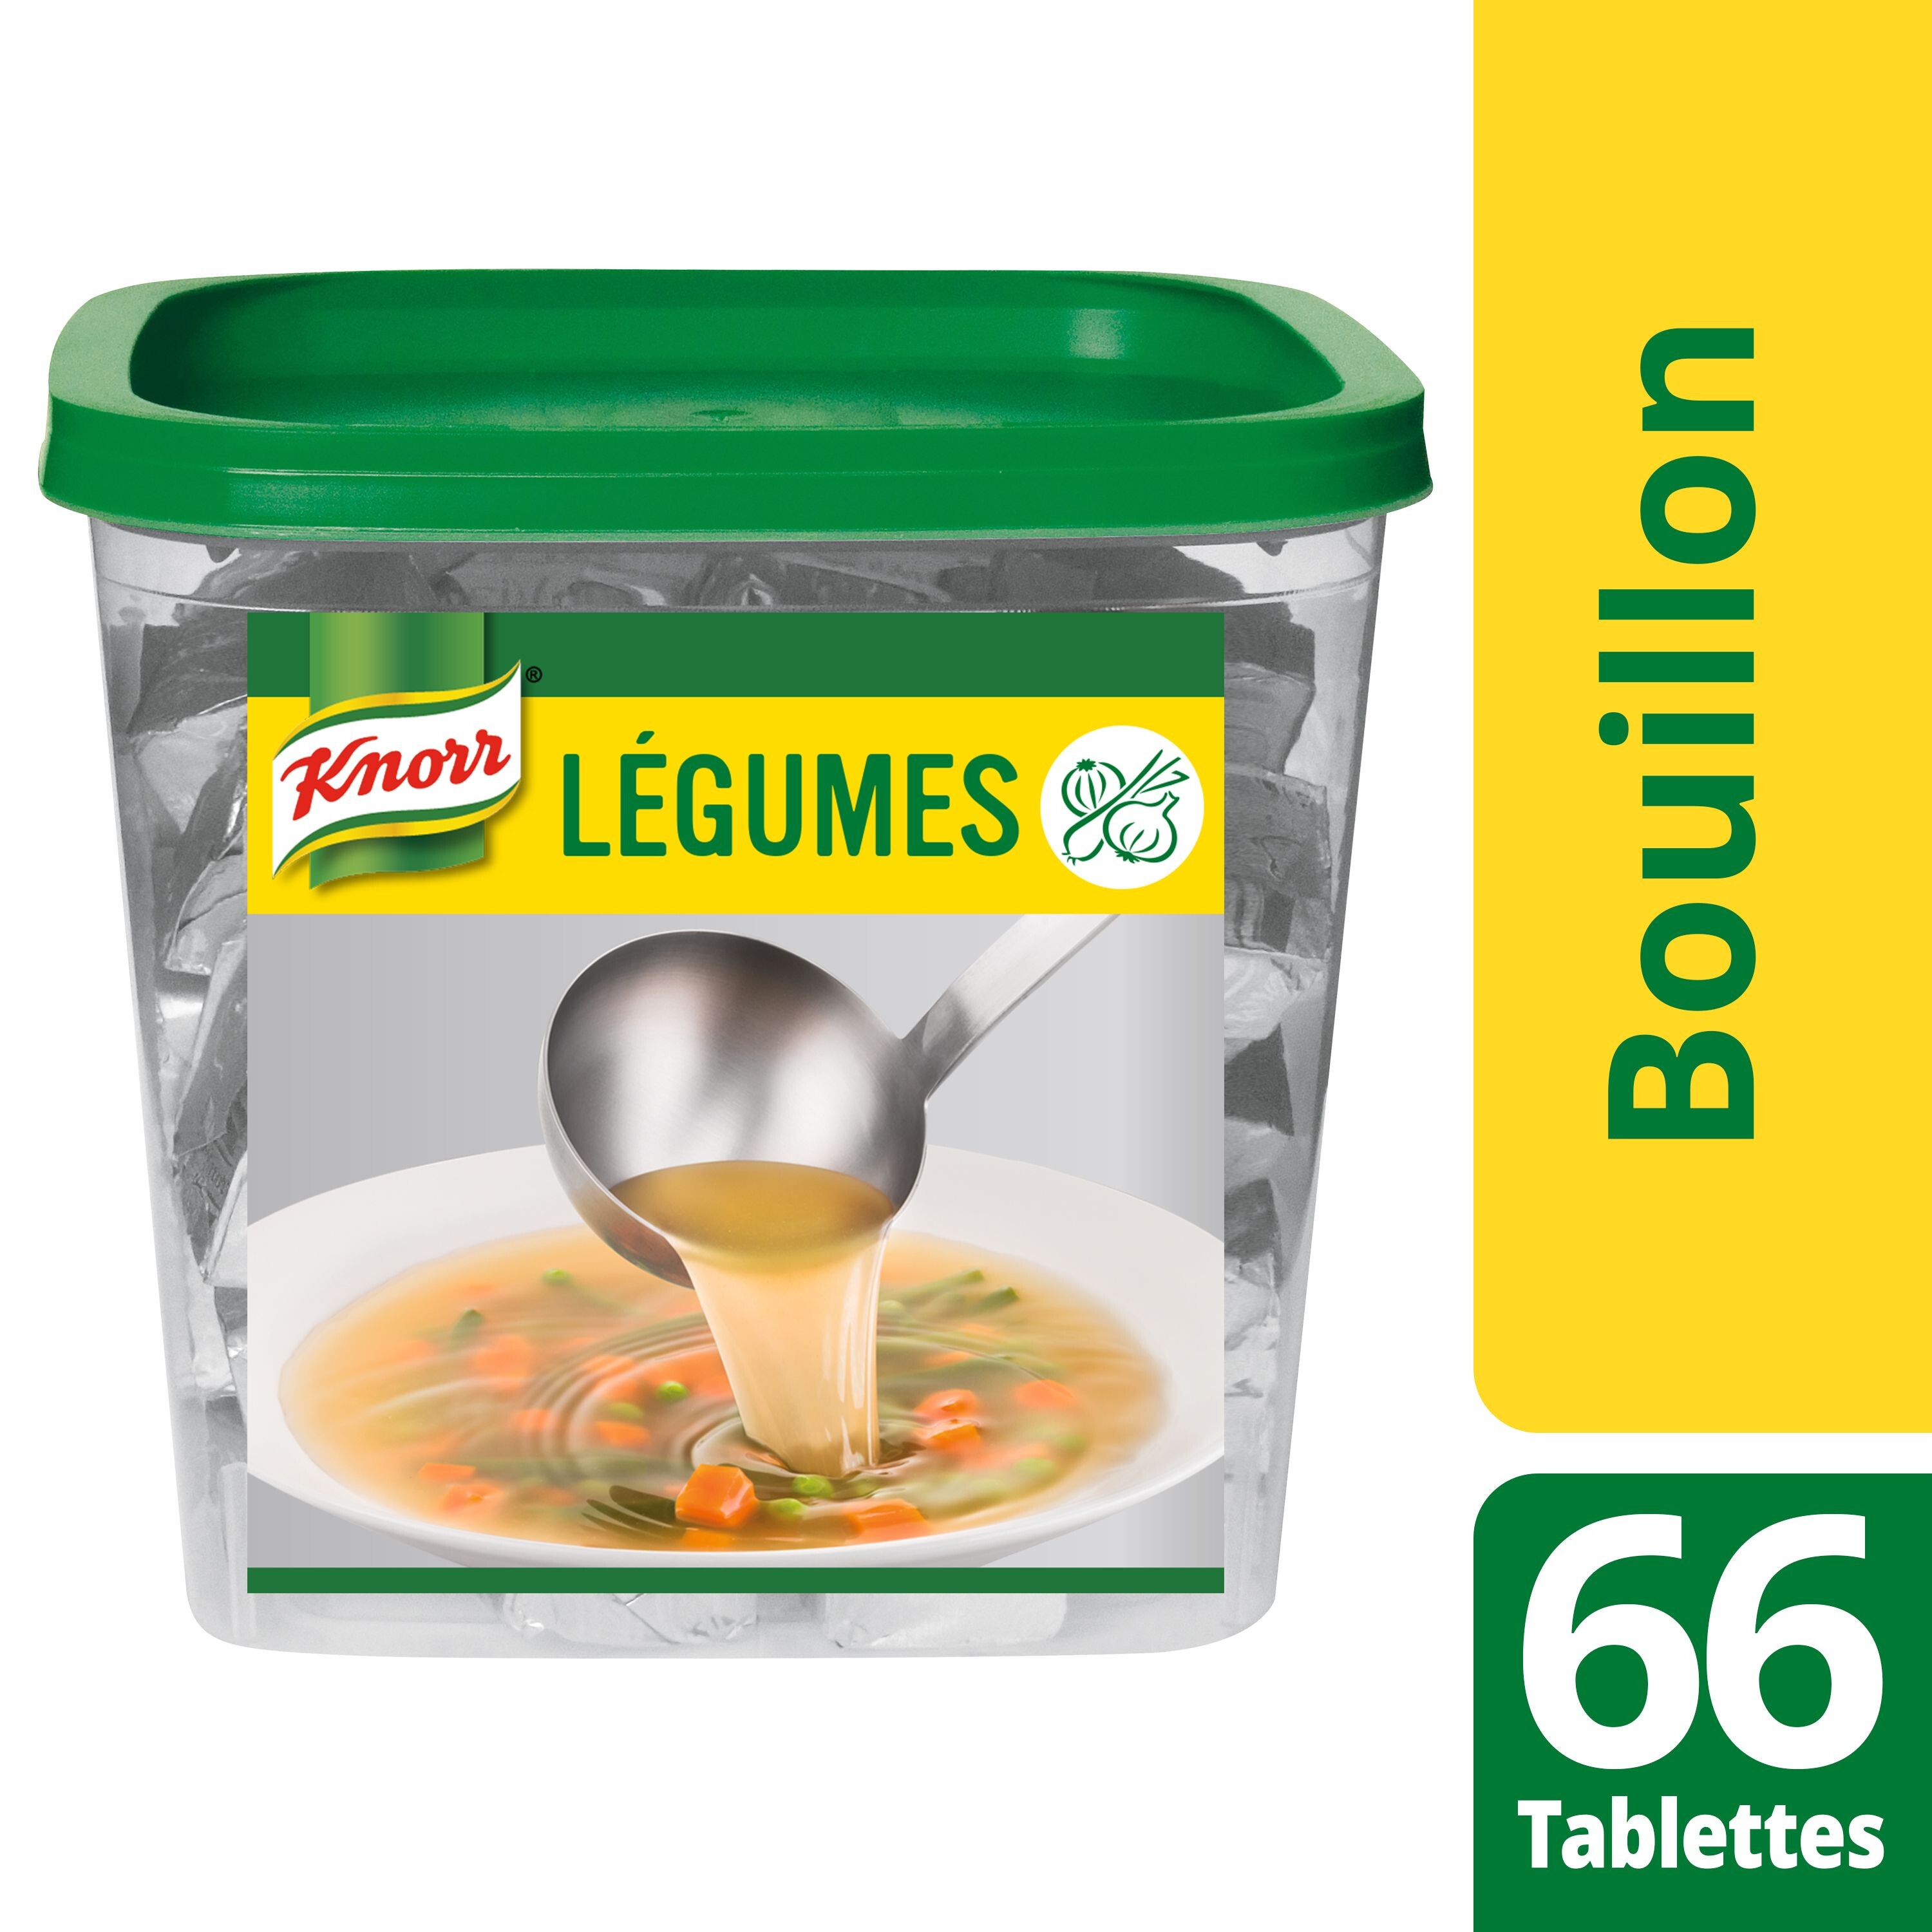 Knorr Vegetable Bouillon 66 cubes